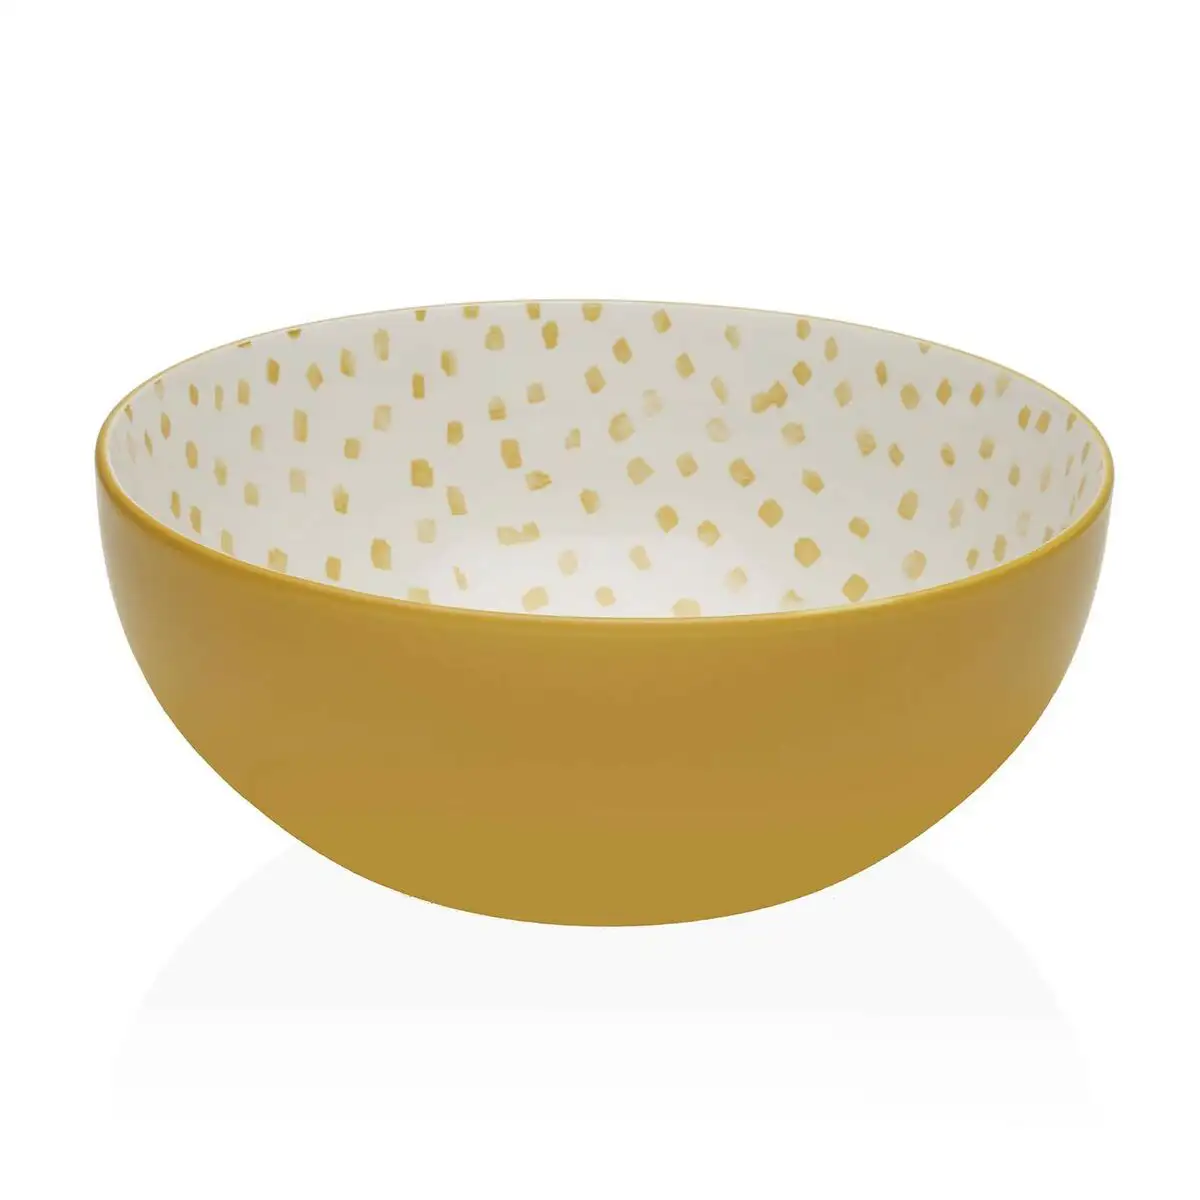 Saladier versa jaune 22 5 x 9 x 22 5 cm ceramique porcelaine_1564. Entrez dans DIAYTAR SENEGAL - Où Chaque Détail Compte. Explorez notre boutique en ligne pour trouver des produits de haute qualité, soigneusement choisis pour répondre à vos besoins et vos désirs.